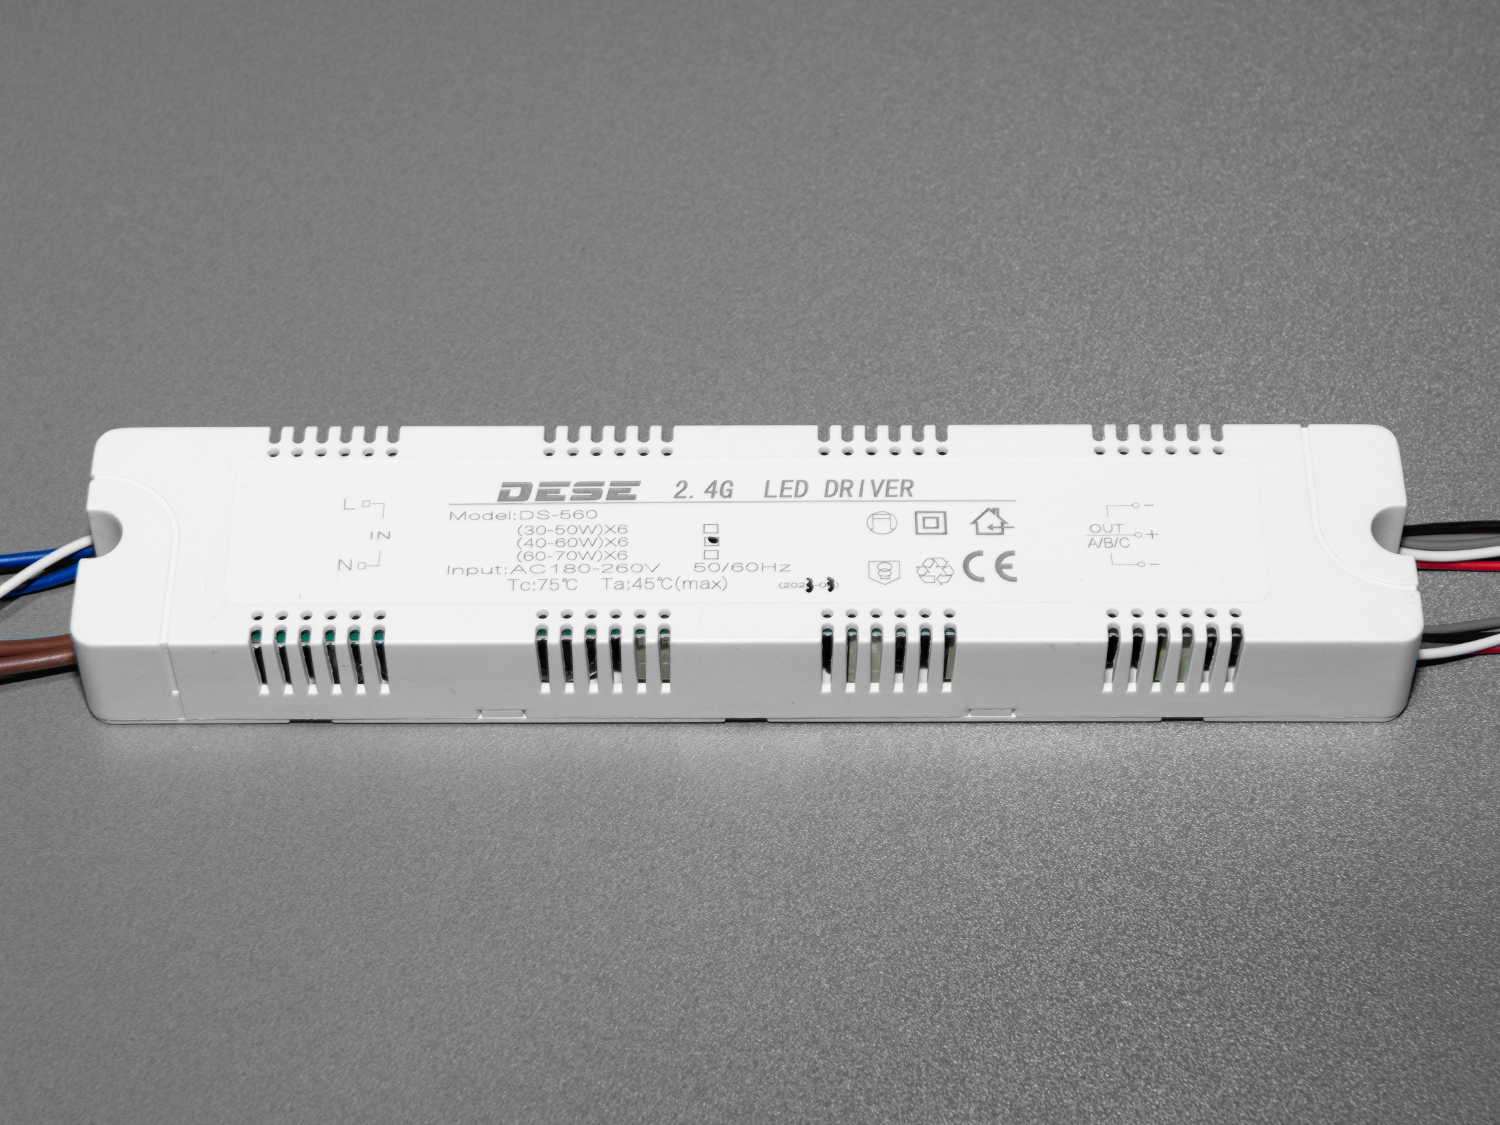 Універсальний комплект для переобладнання світлодіодних люстр.

Блок приймача пульта встановлюється місце рідного блоку живлення світлодіодної люстри. Цей комплект може бути використаний на люстрах з робочим струмом світлодіодних модулів від 210 до 300 мА. Діммер має 6 вихідних каналів для підключення до стандартної світлодіодної люстри, схема підключення 